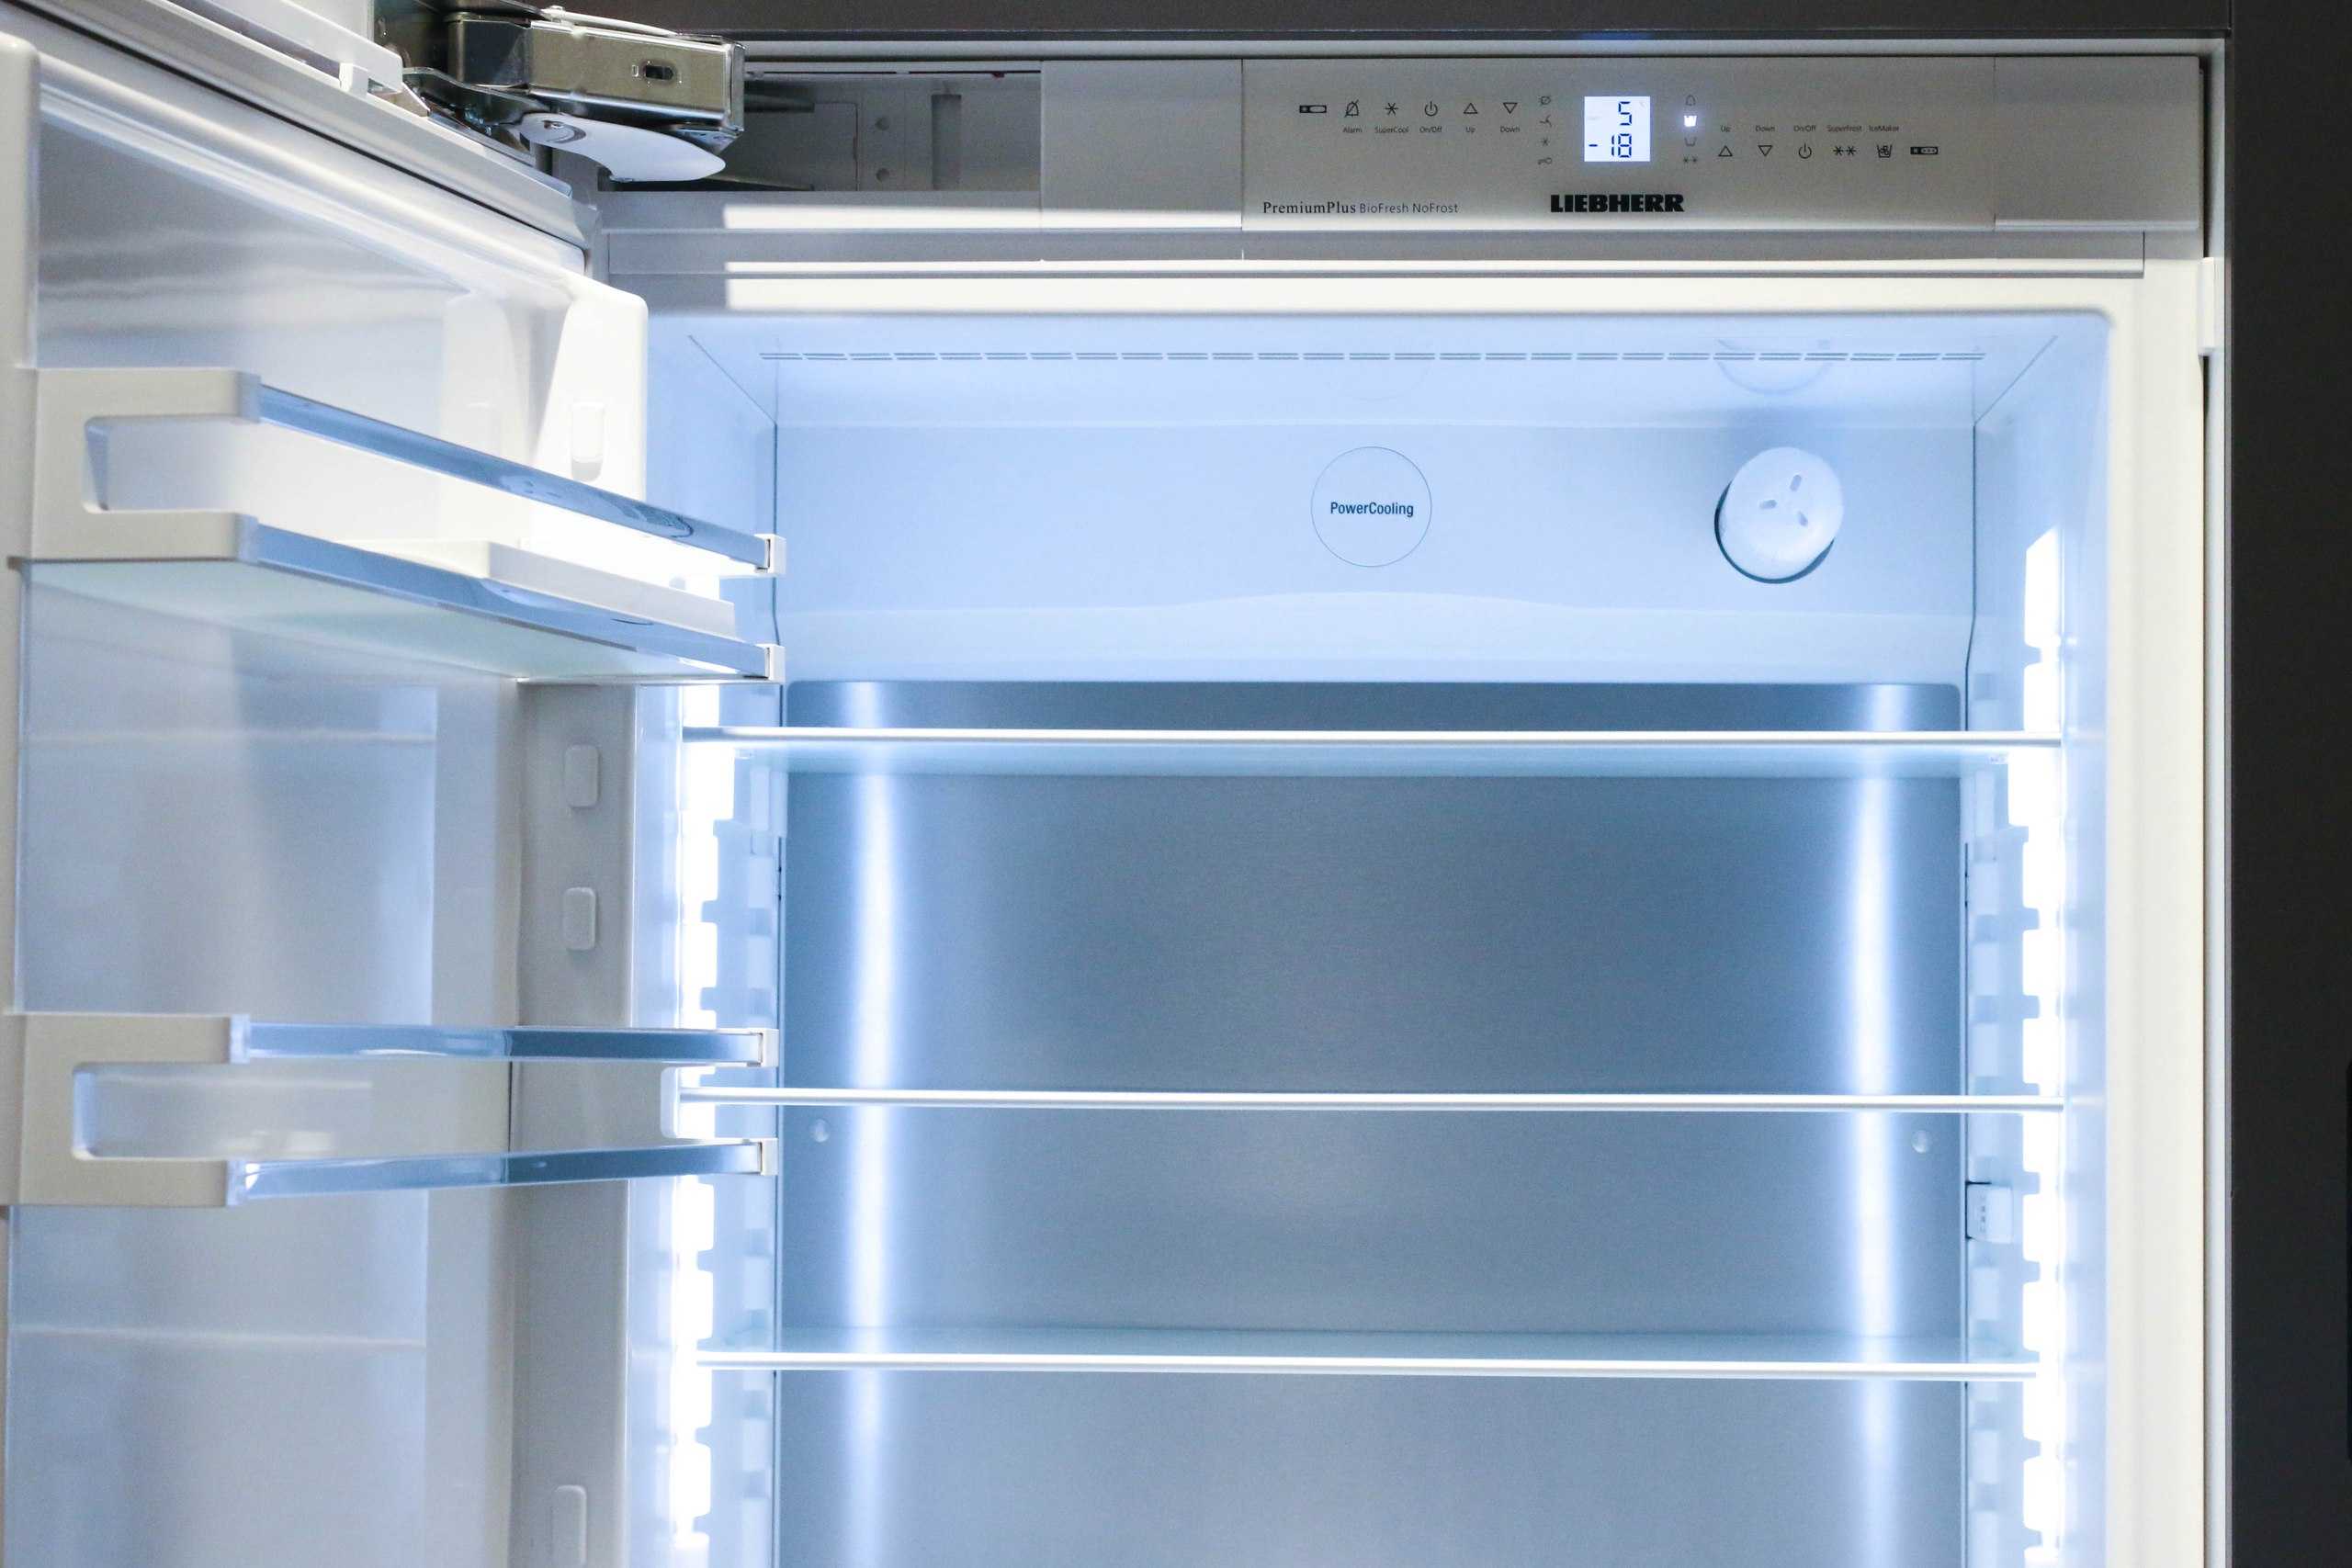 Холодильник не включается: причины можно выявить самому